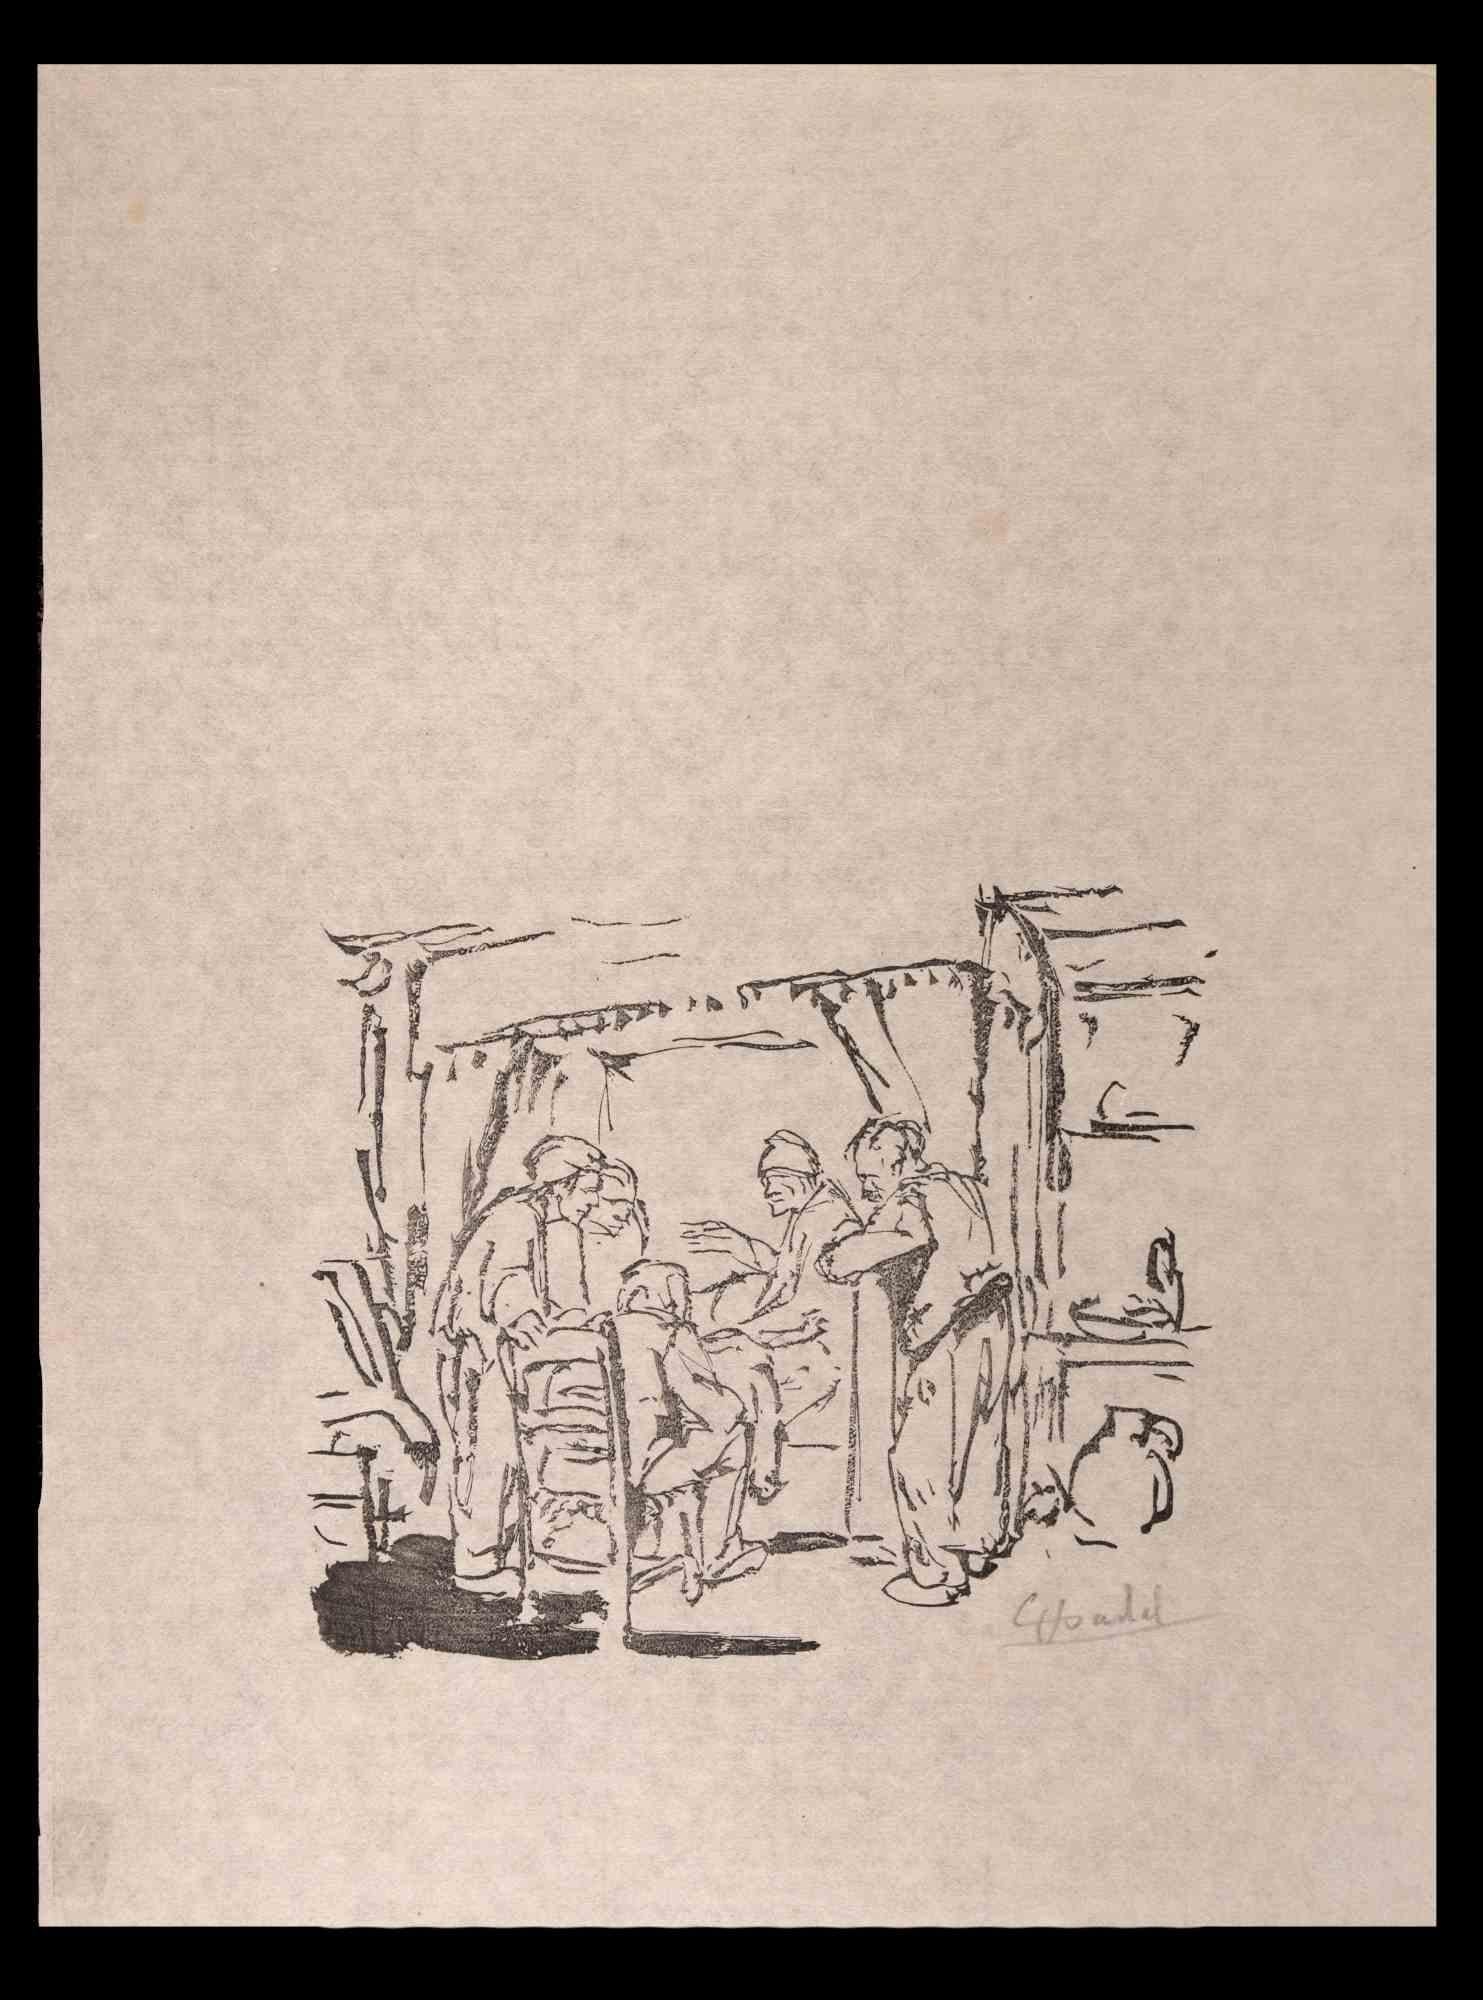 Visit ist ein Originalkunstwerk von Jules Chadel (1870-1941). Holzschnitt. Rechts unten handsigniert. Ist nicht datiert, aber wir können den Zeitraum Ende des 19. Passpartout cm 44,5x32,5

Die Künstlerin zeigt das Innere eines Raumes mit Männern,